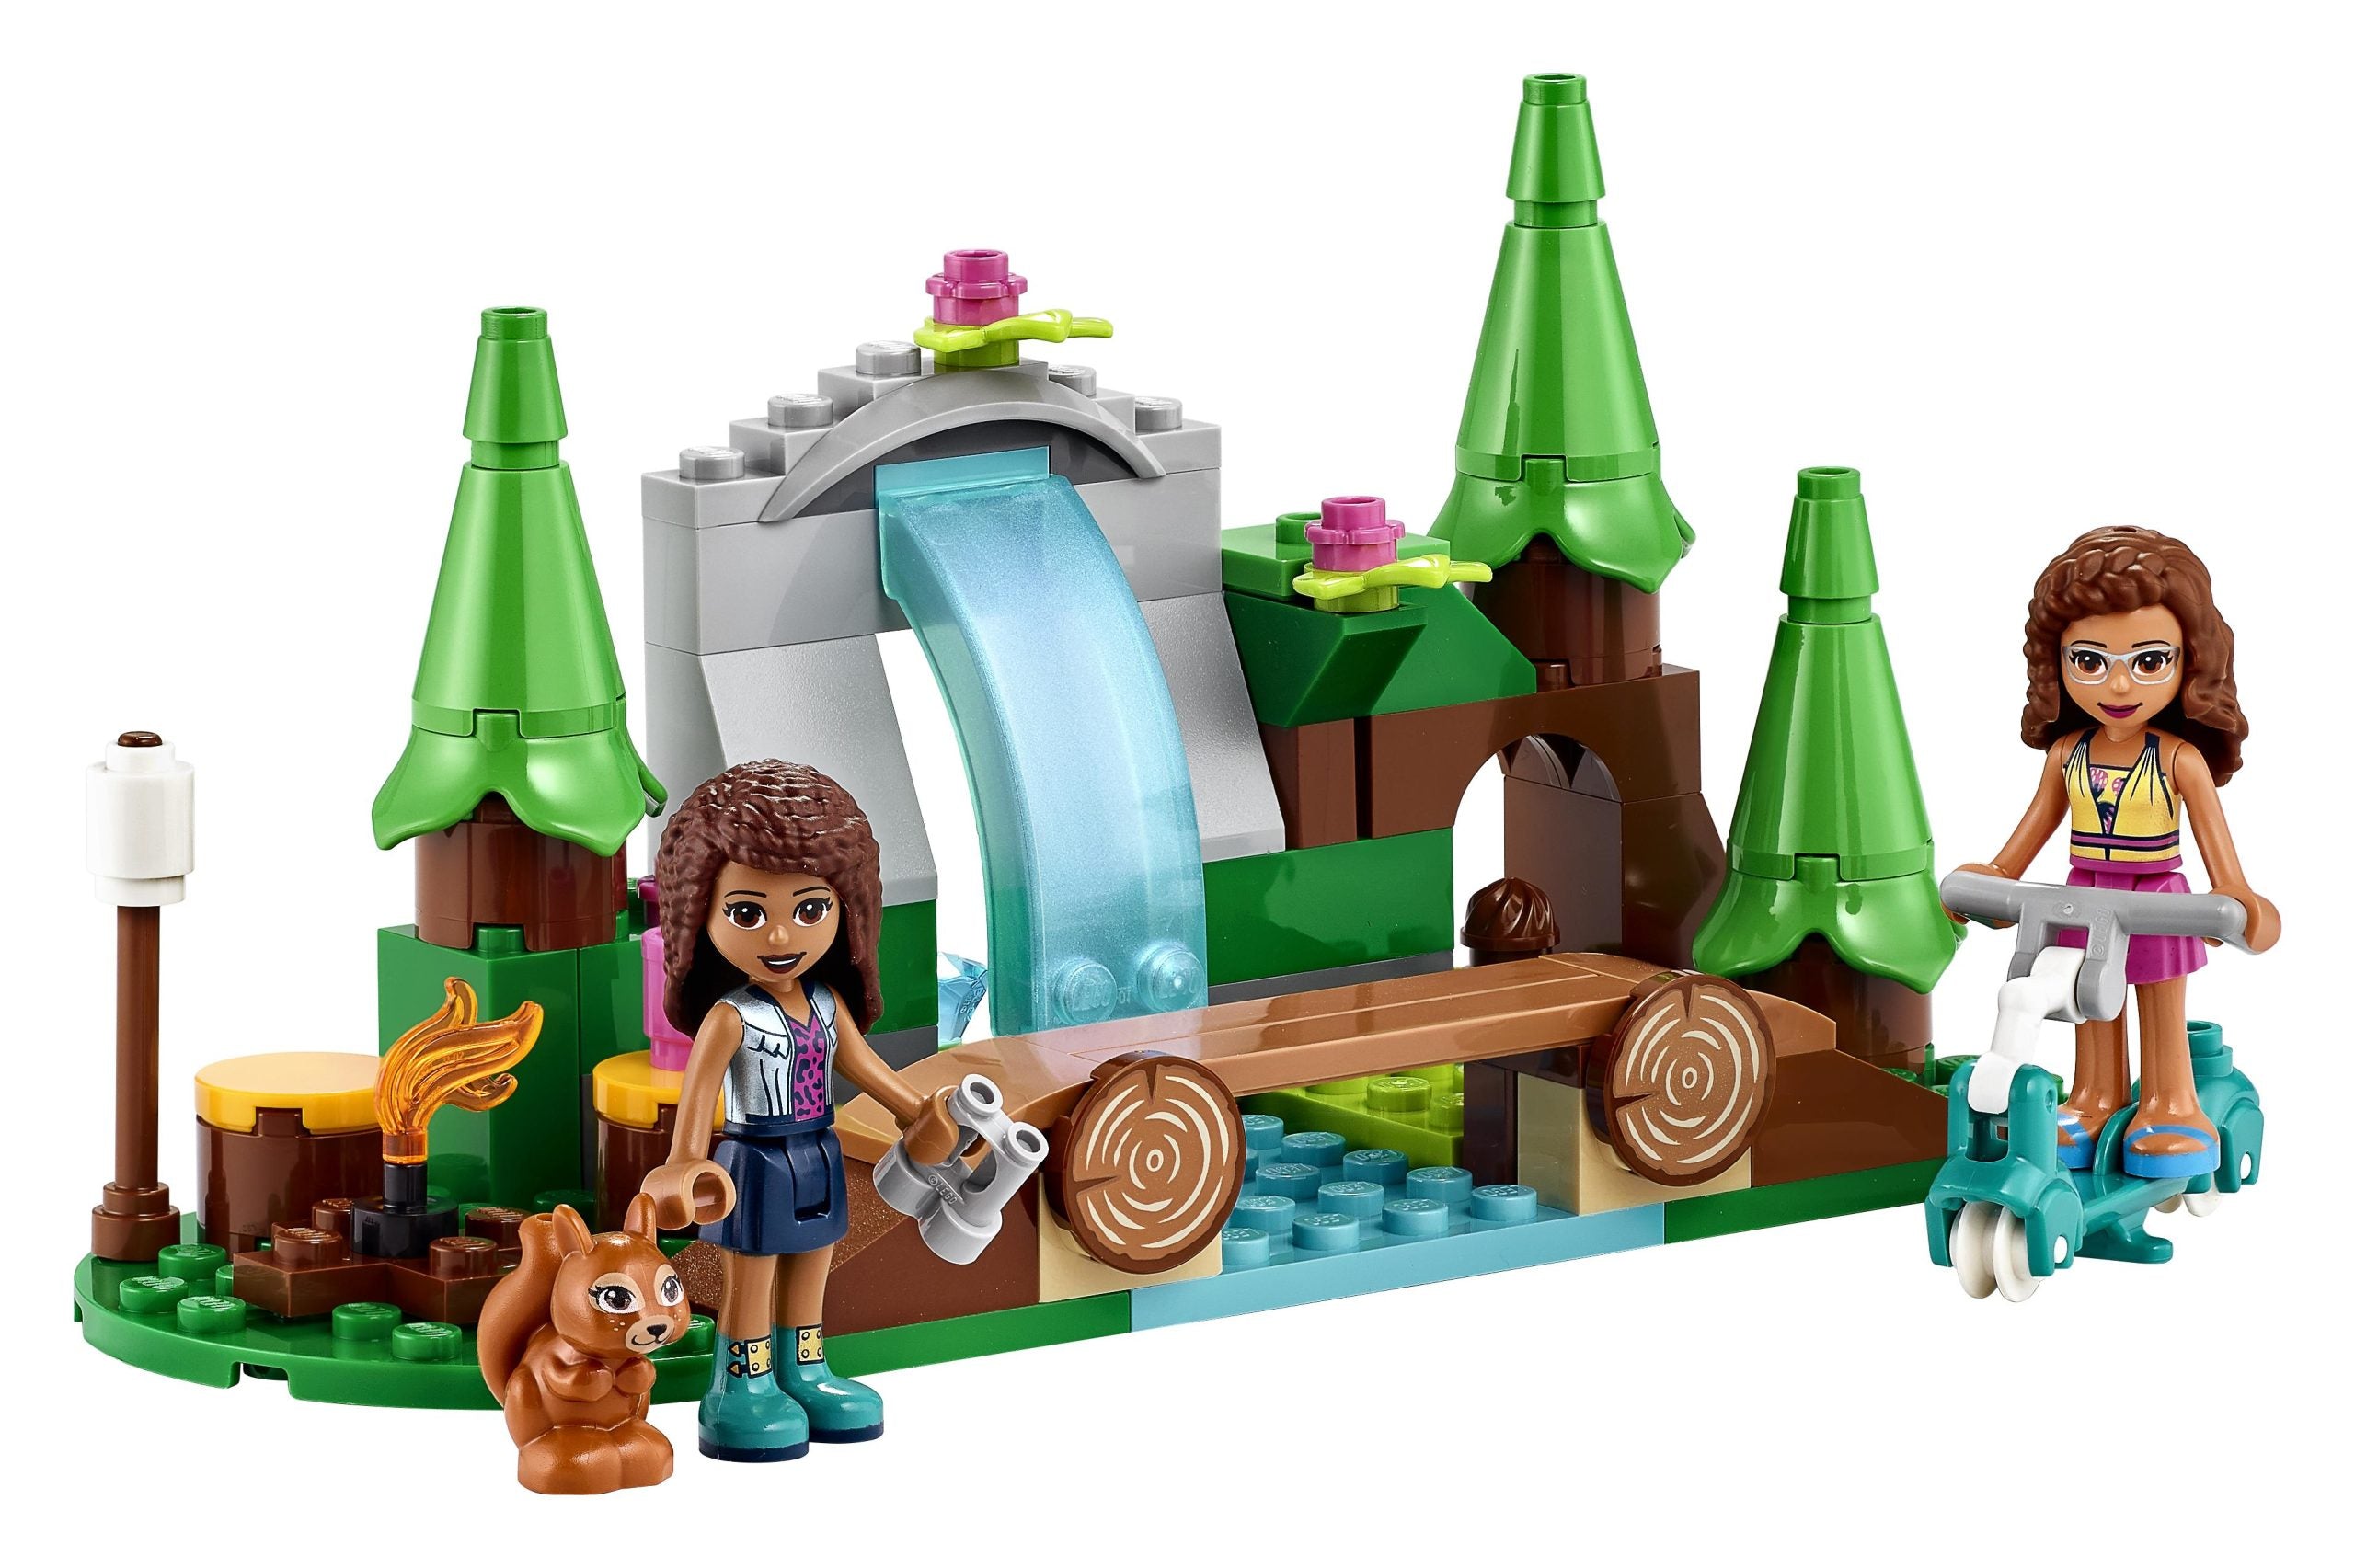 41677 LEGO® Friends - La cascata nel bosco